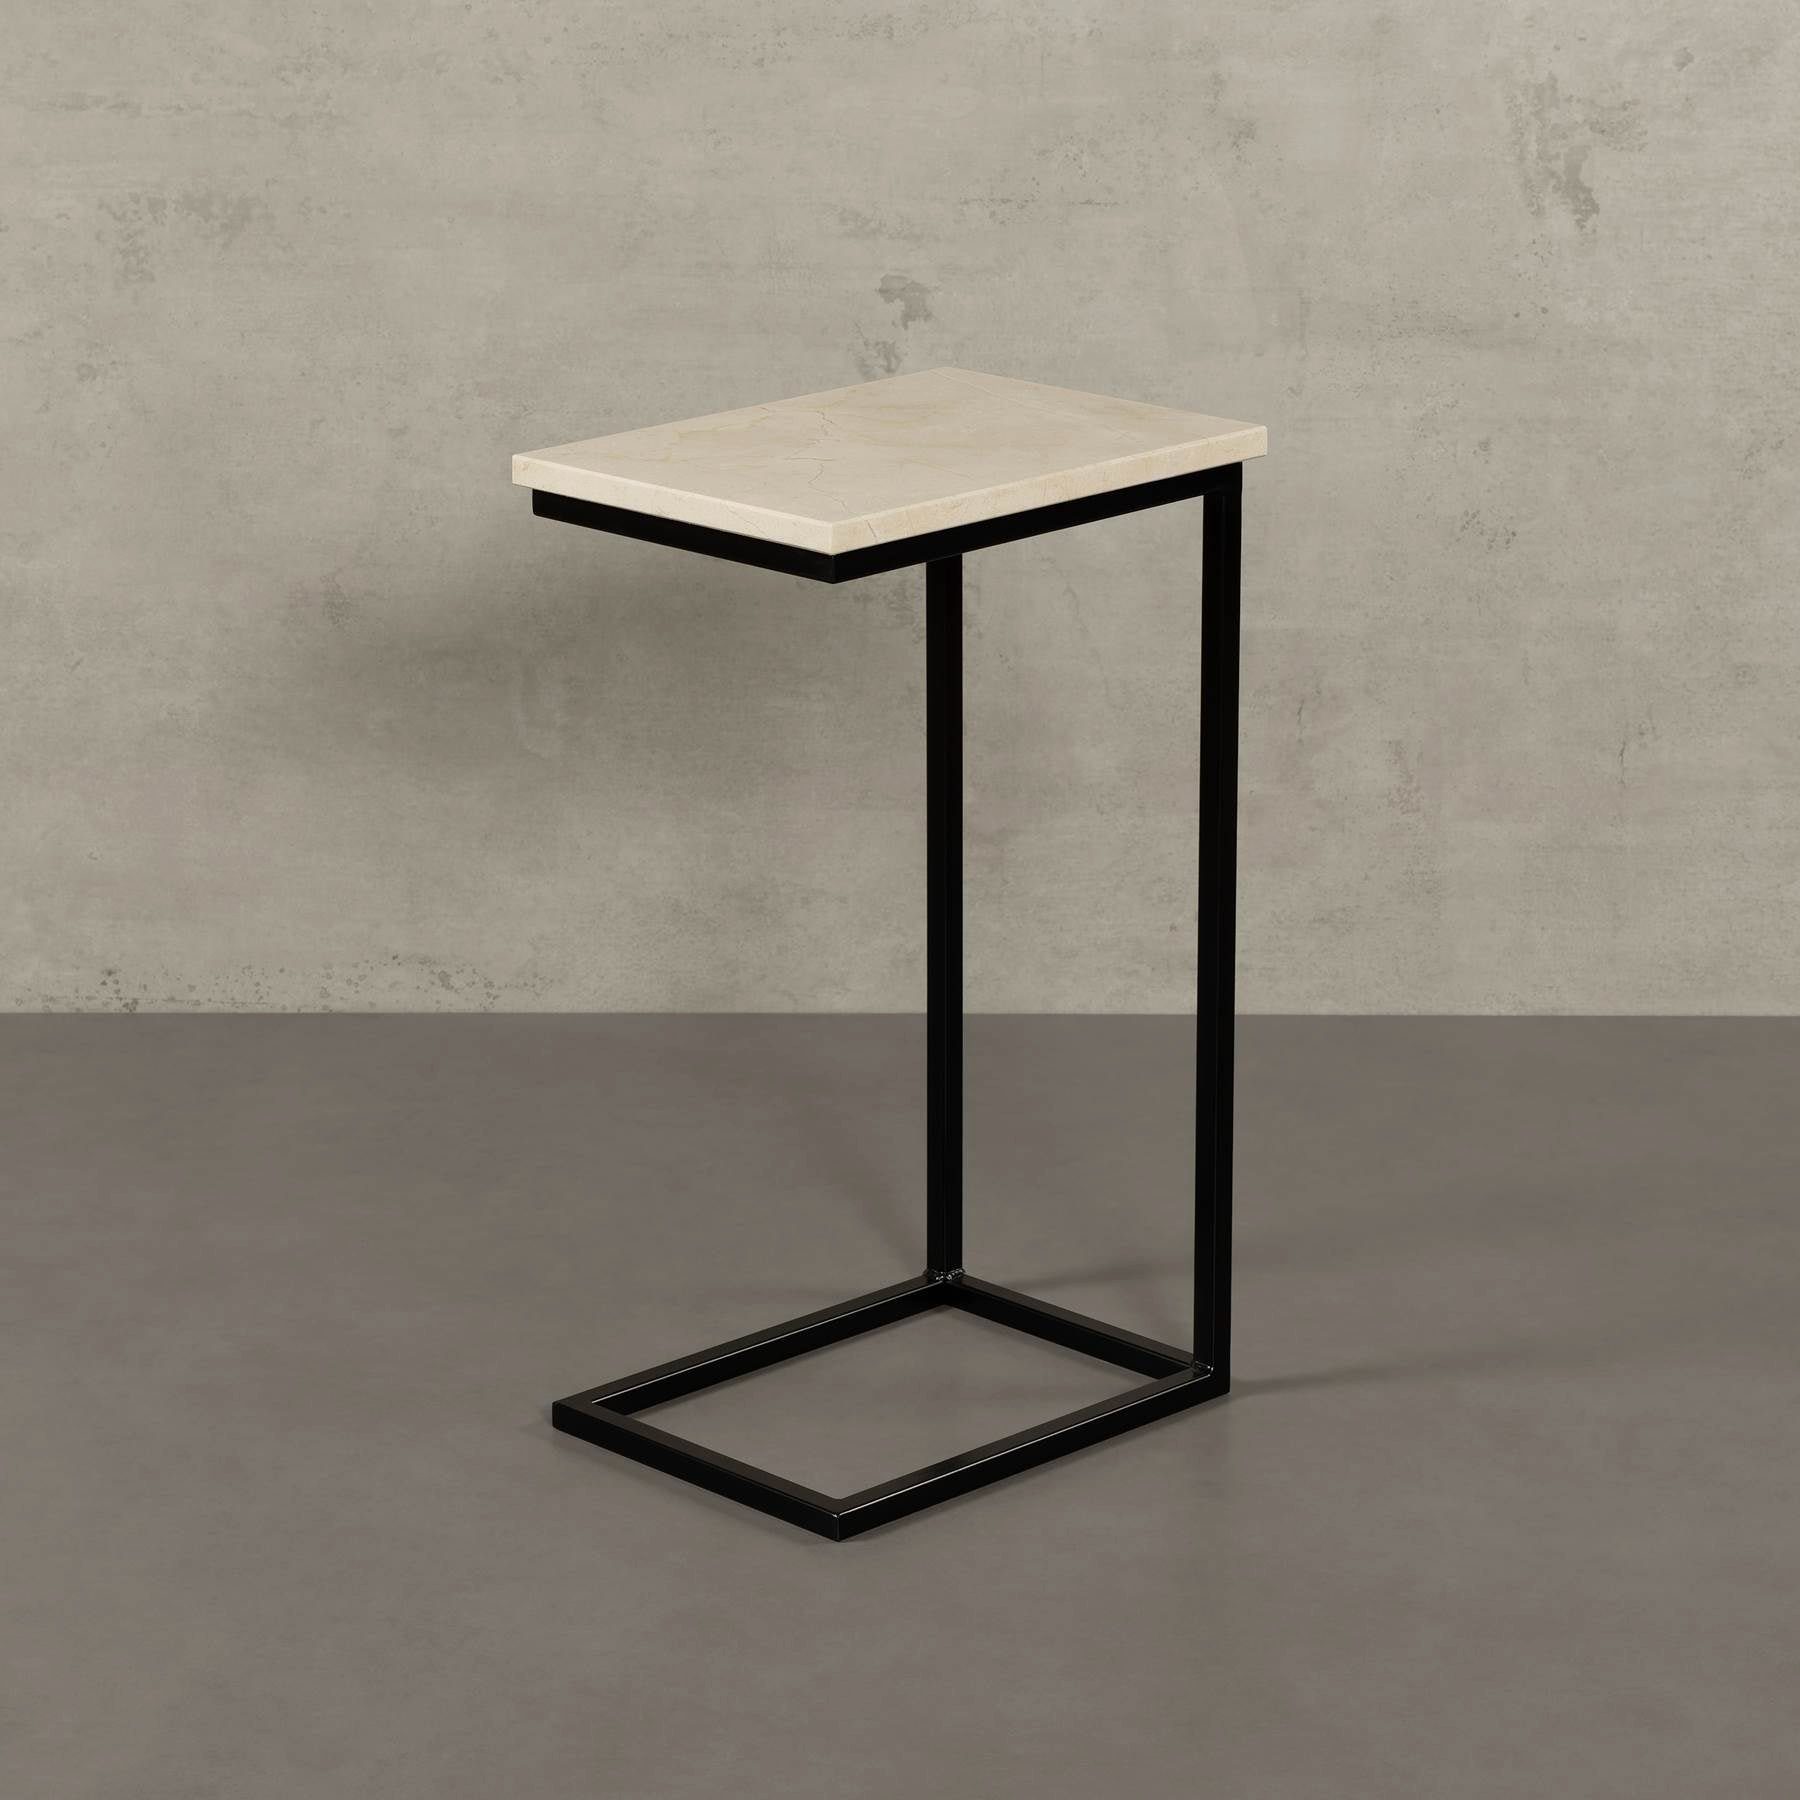 MAGNA Atelier Couchtisch STOCKHOLM mit ECHTEM MARMOR, Wohnzimmer Tisch eckig, Laptoptisch, schwarz Metallgestell, 40x30x68cm Crema Marfil